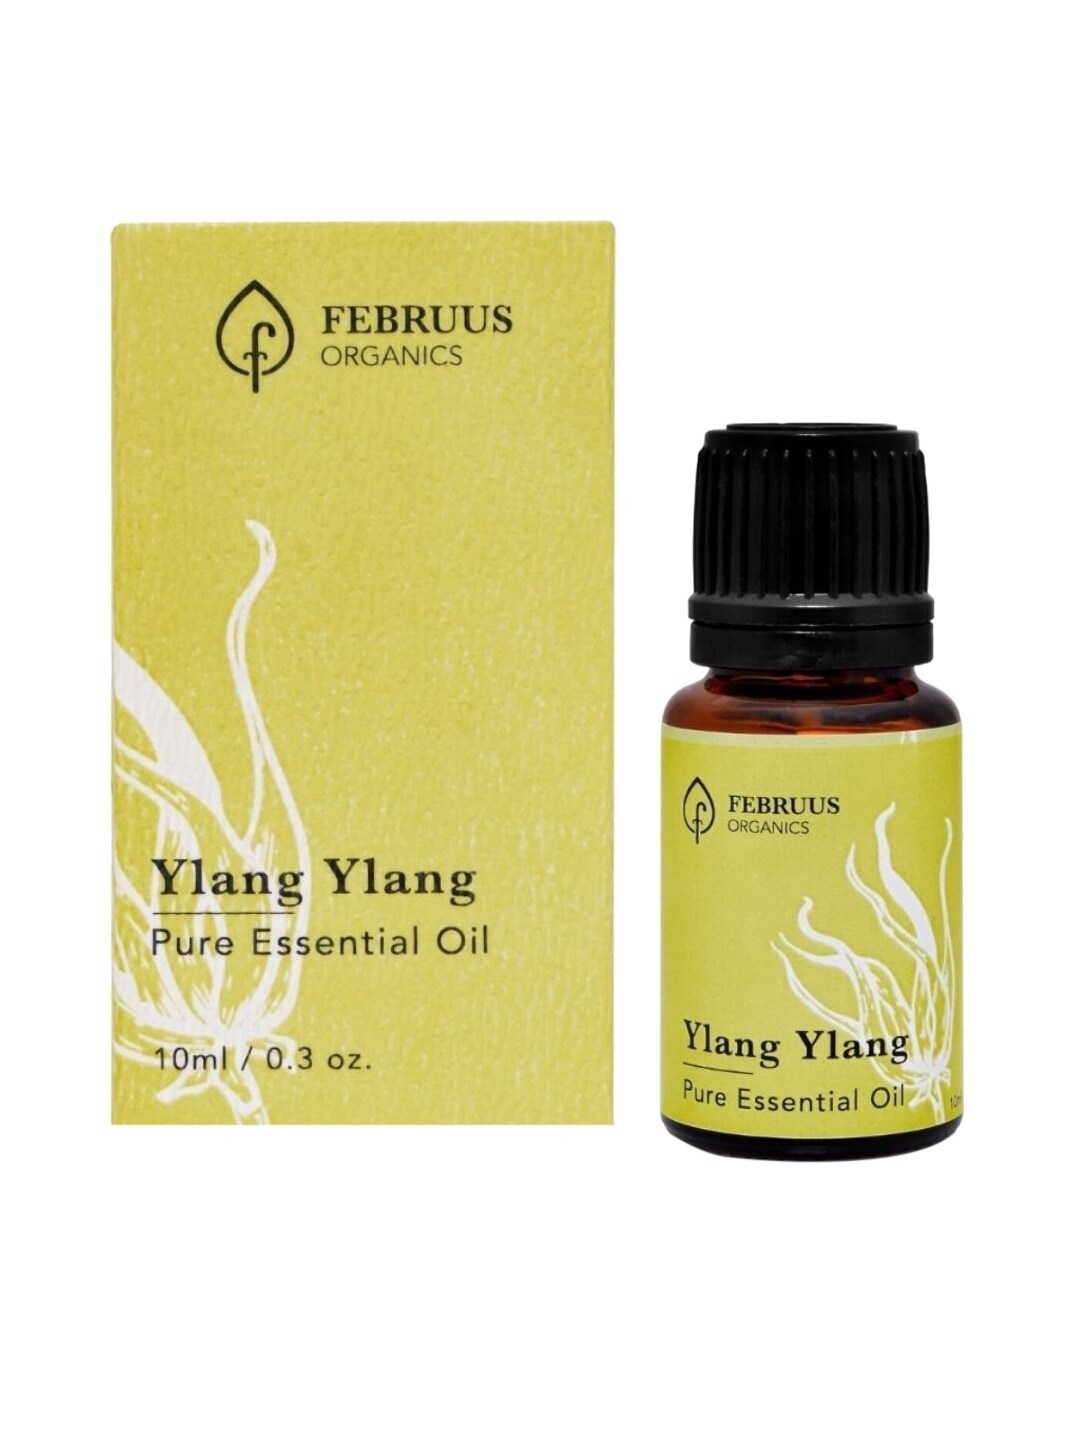 Februus Organics Ylang Ylang Essential Oil Price in India